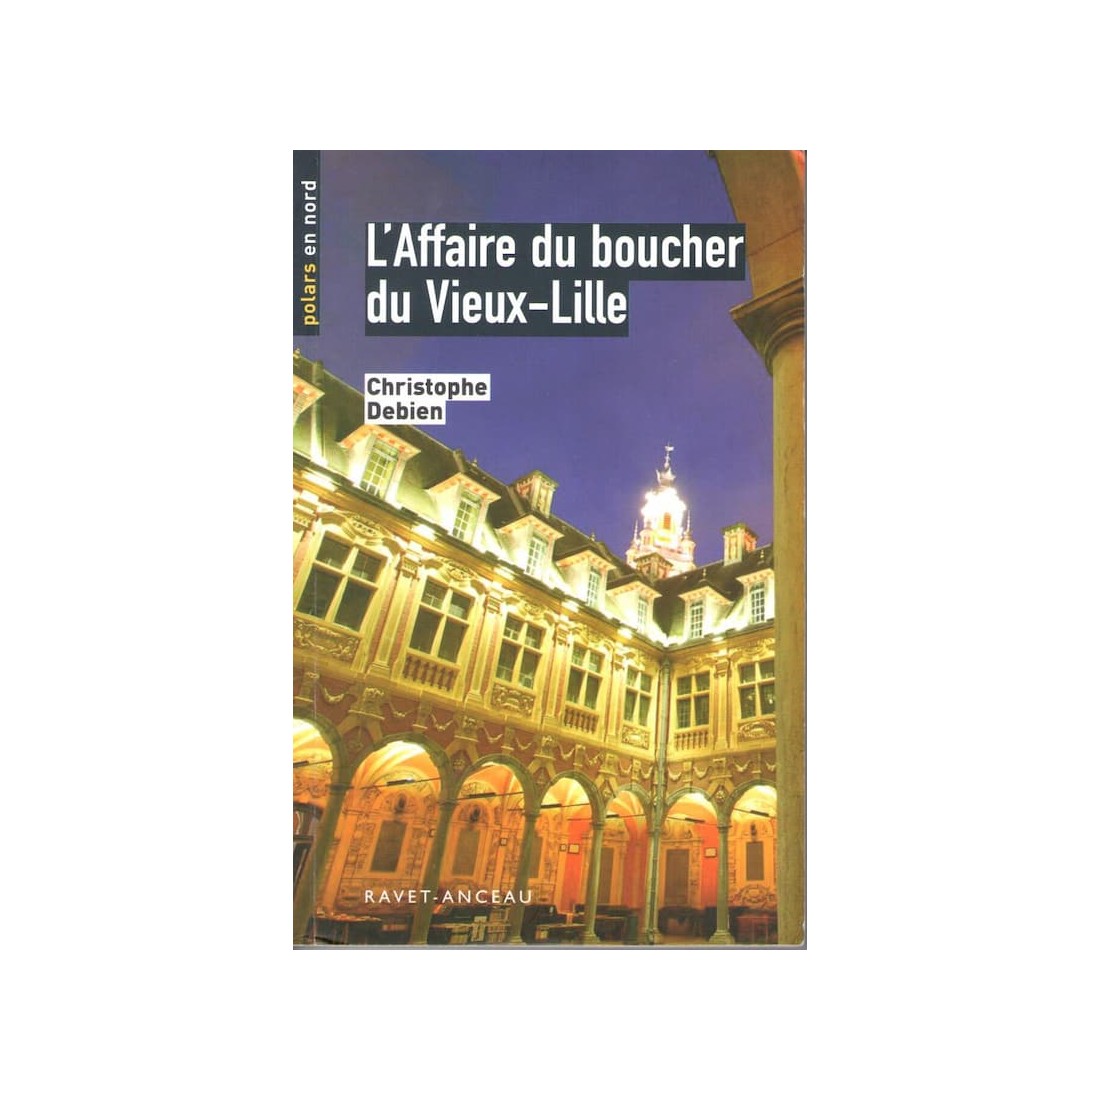 L'affaire du Boucher du Vieux Lille - Roman de Christophe Debien - Ocazlivres.com